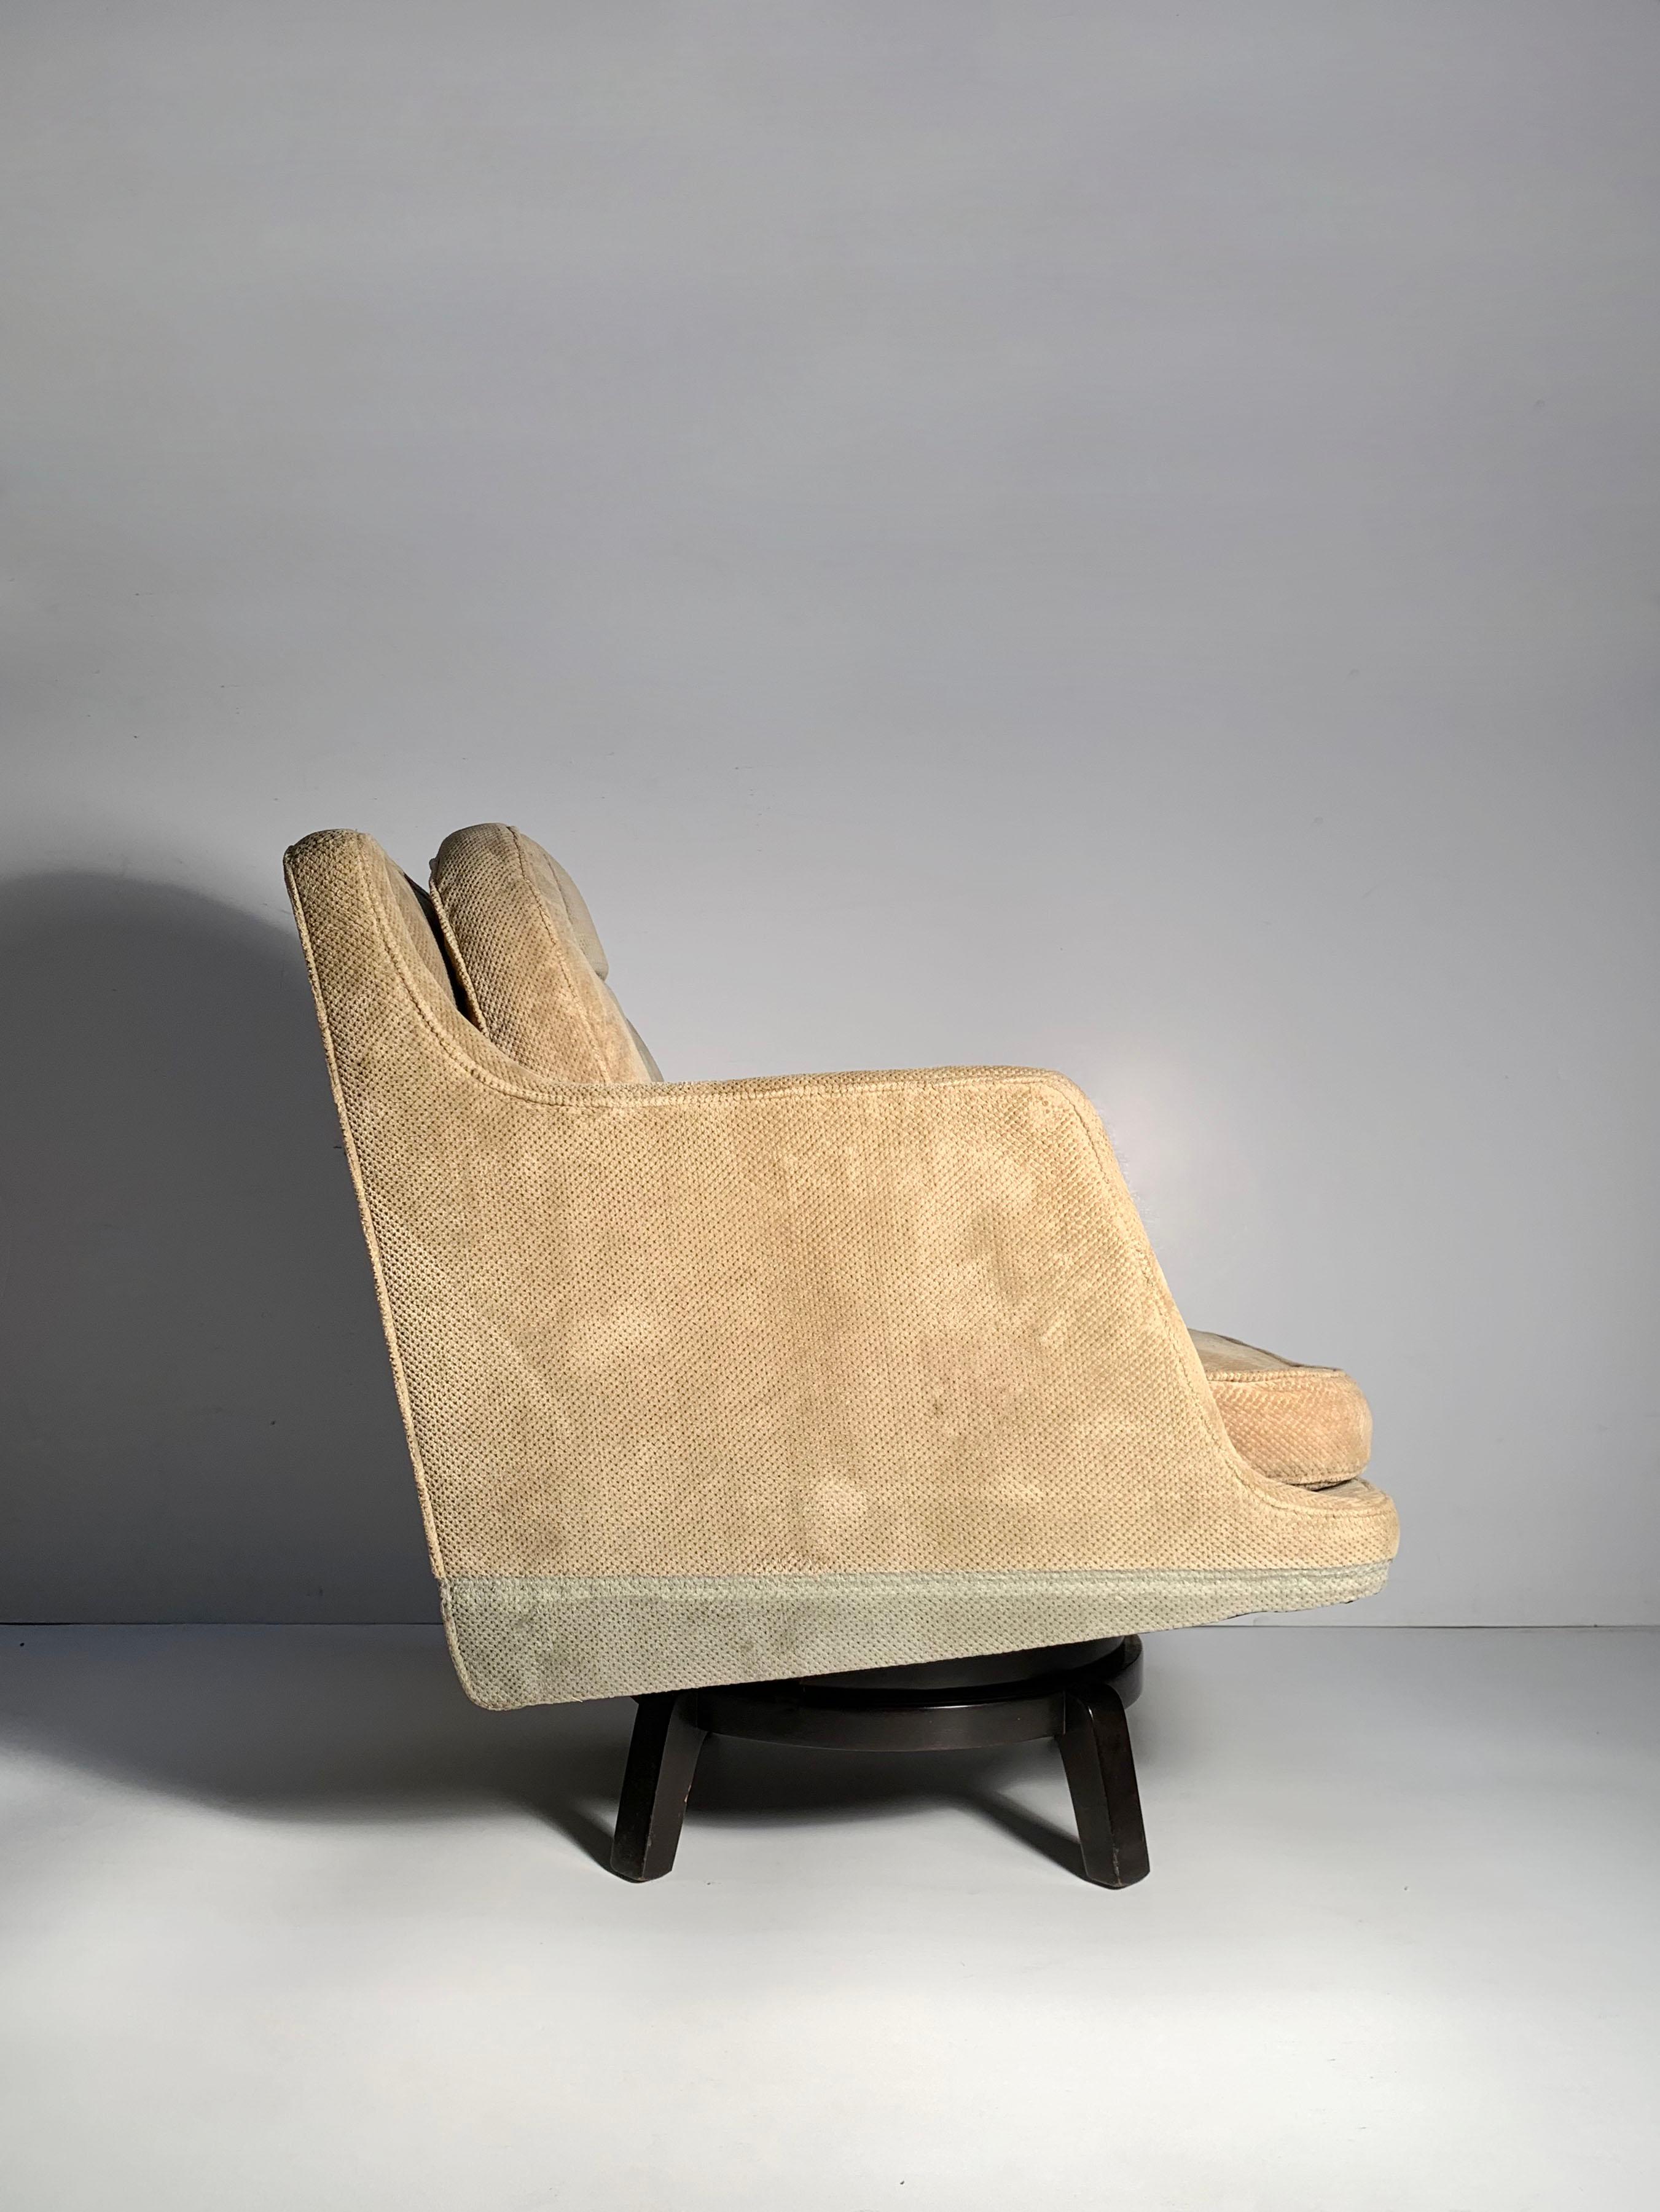 Edward Wormley dunbar swivel lounge chair.